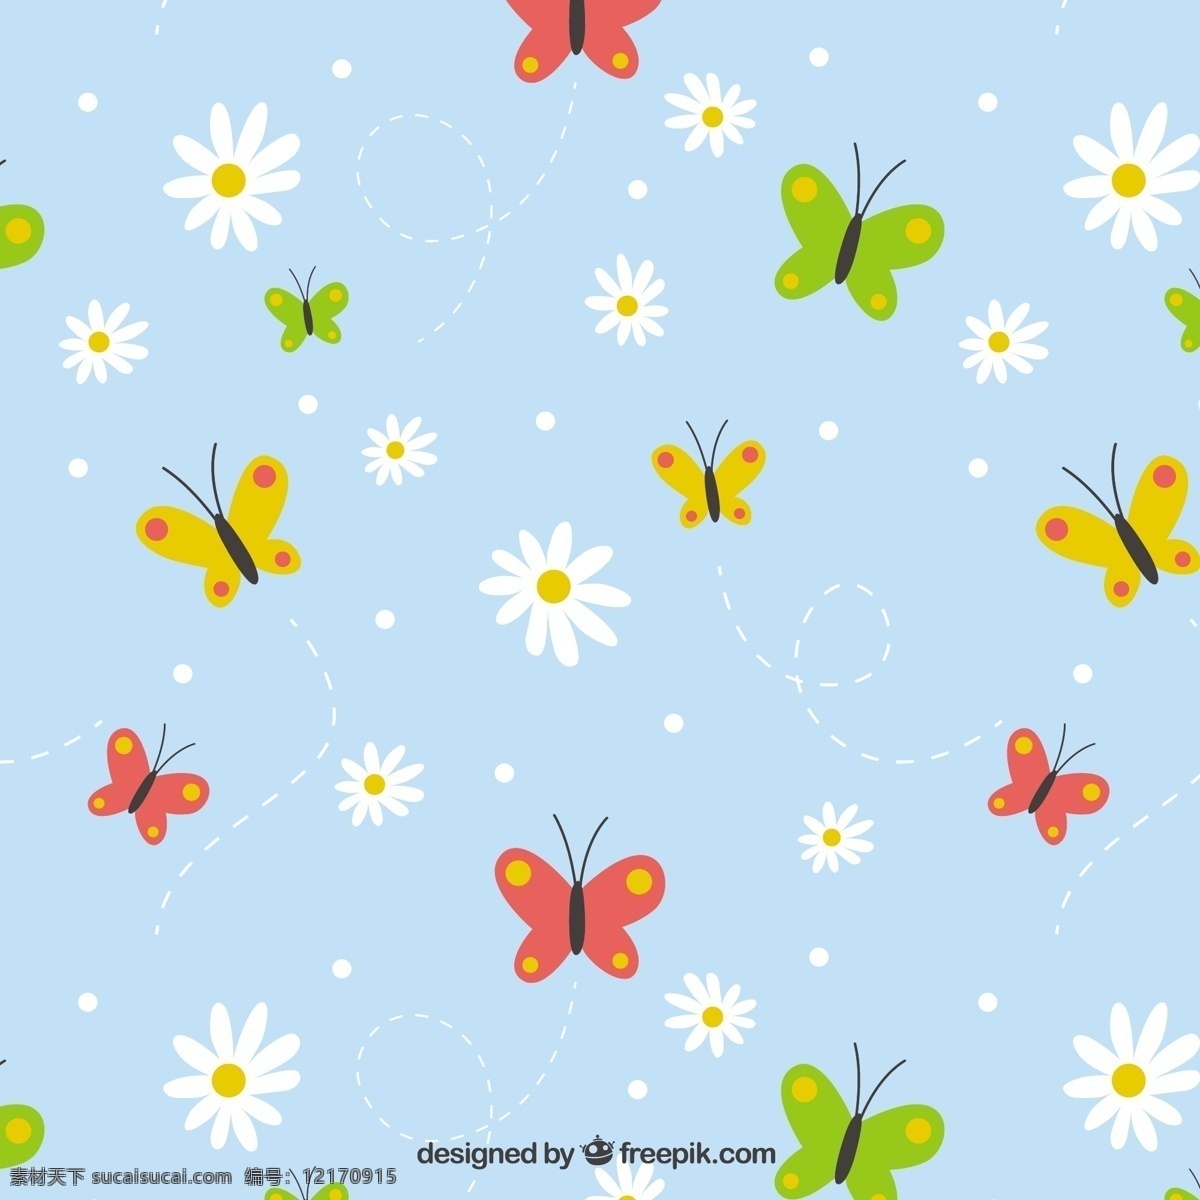 手绘 图案 雏 菊 彩色 蝴蝶 背景 花卉 手 自然 花卉背景 动物 花卉图案 颜色 装饰 丰富多彩 无缝模式 自然背景